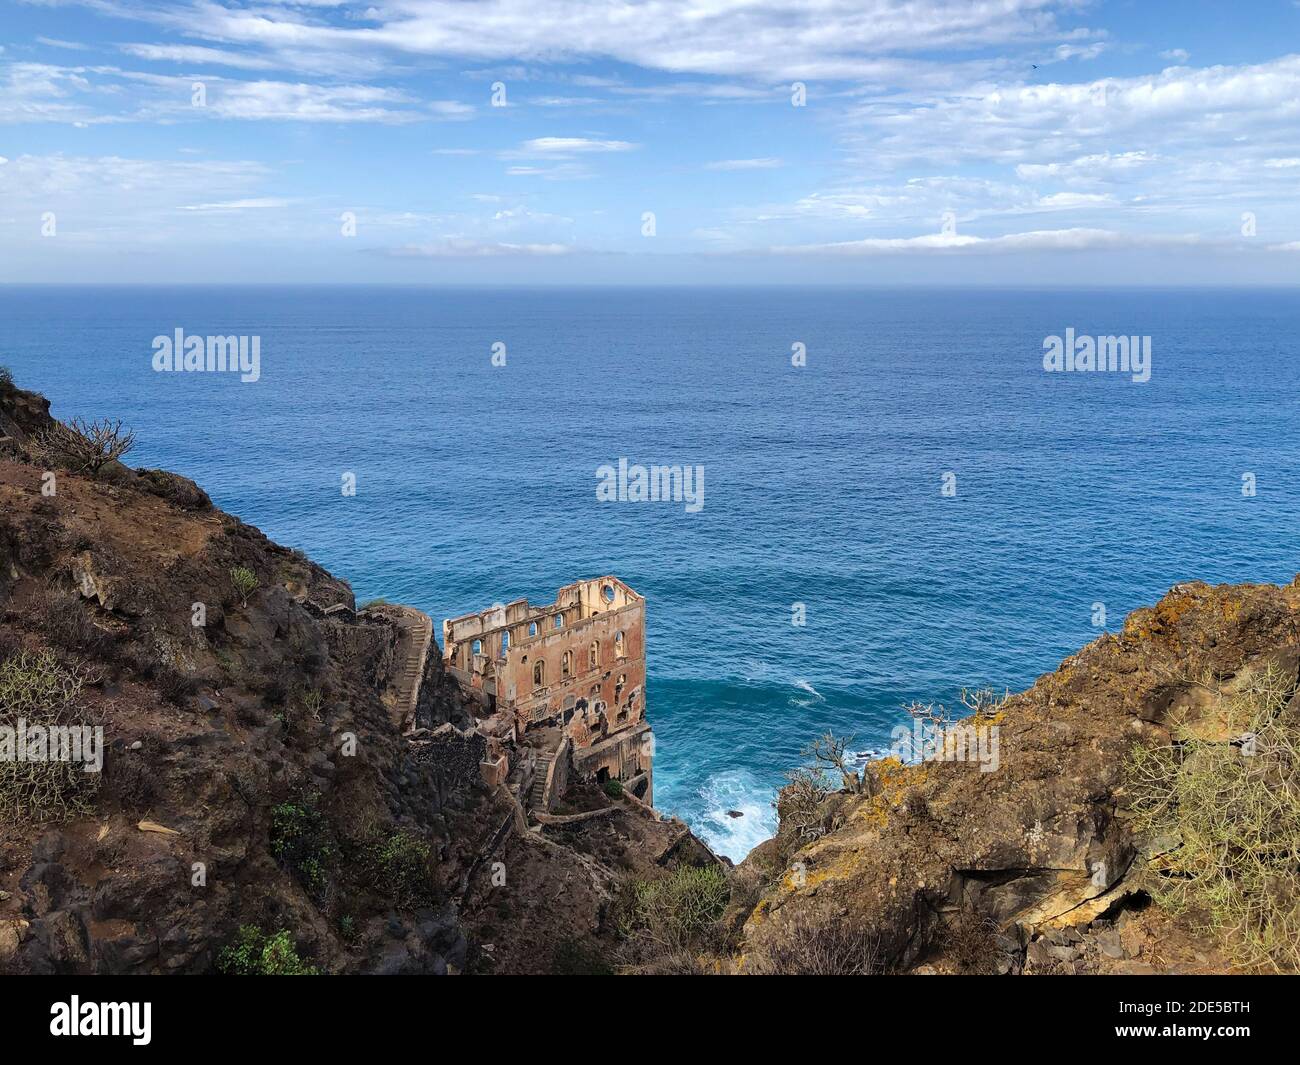 La ruina de la construcción (Casa del agua) en la costa con fondo del océano, Tenerife - Foto de stock